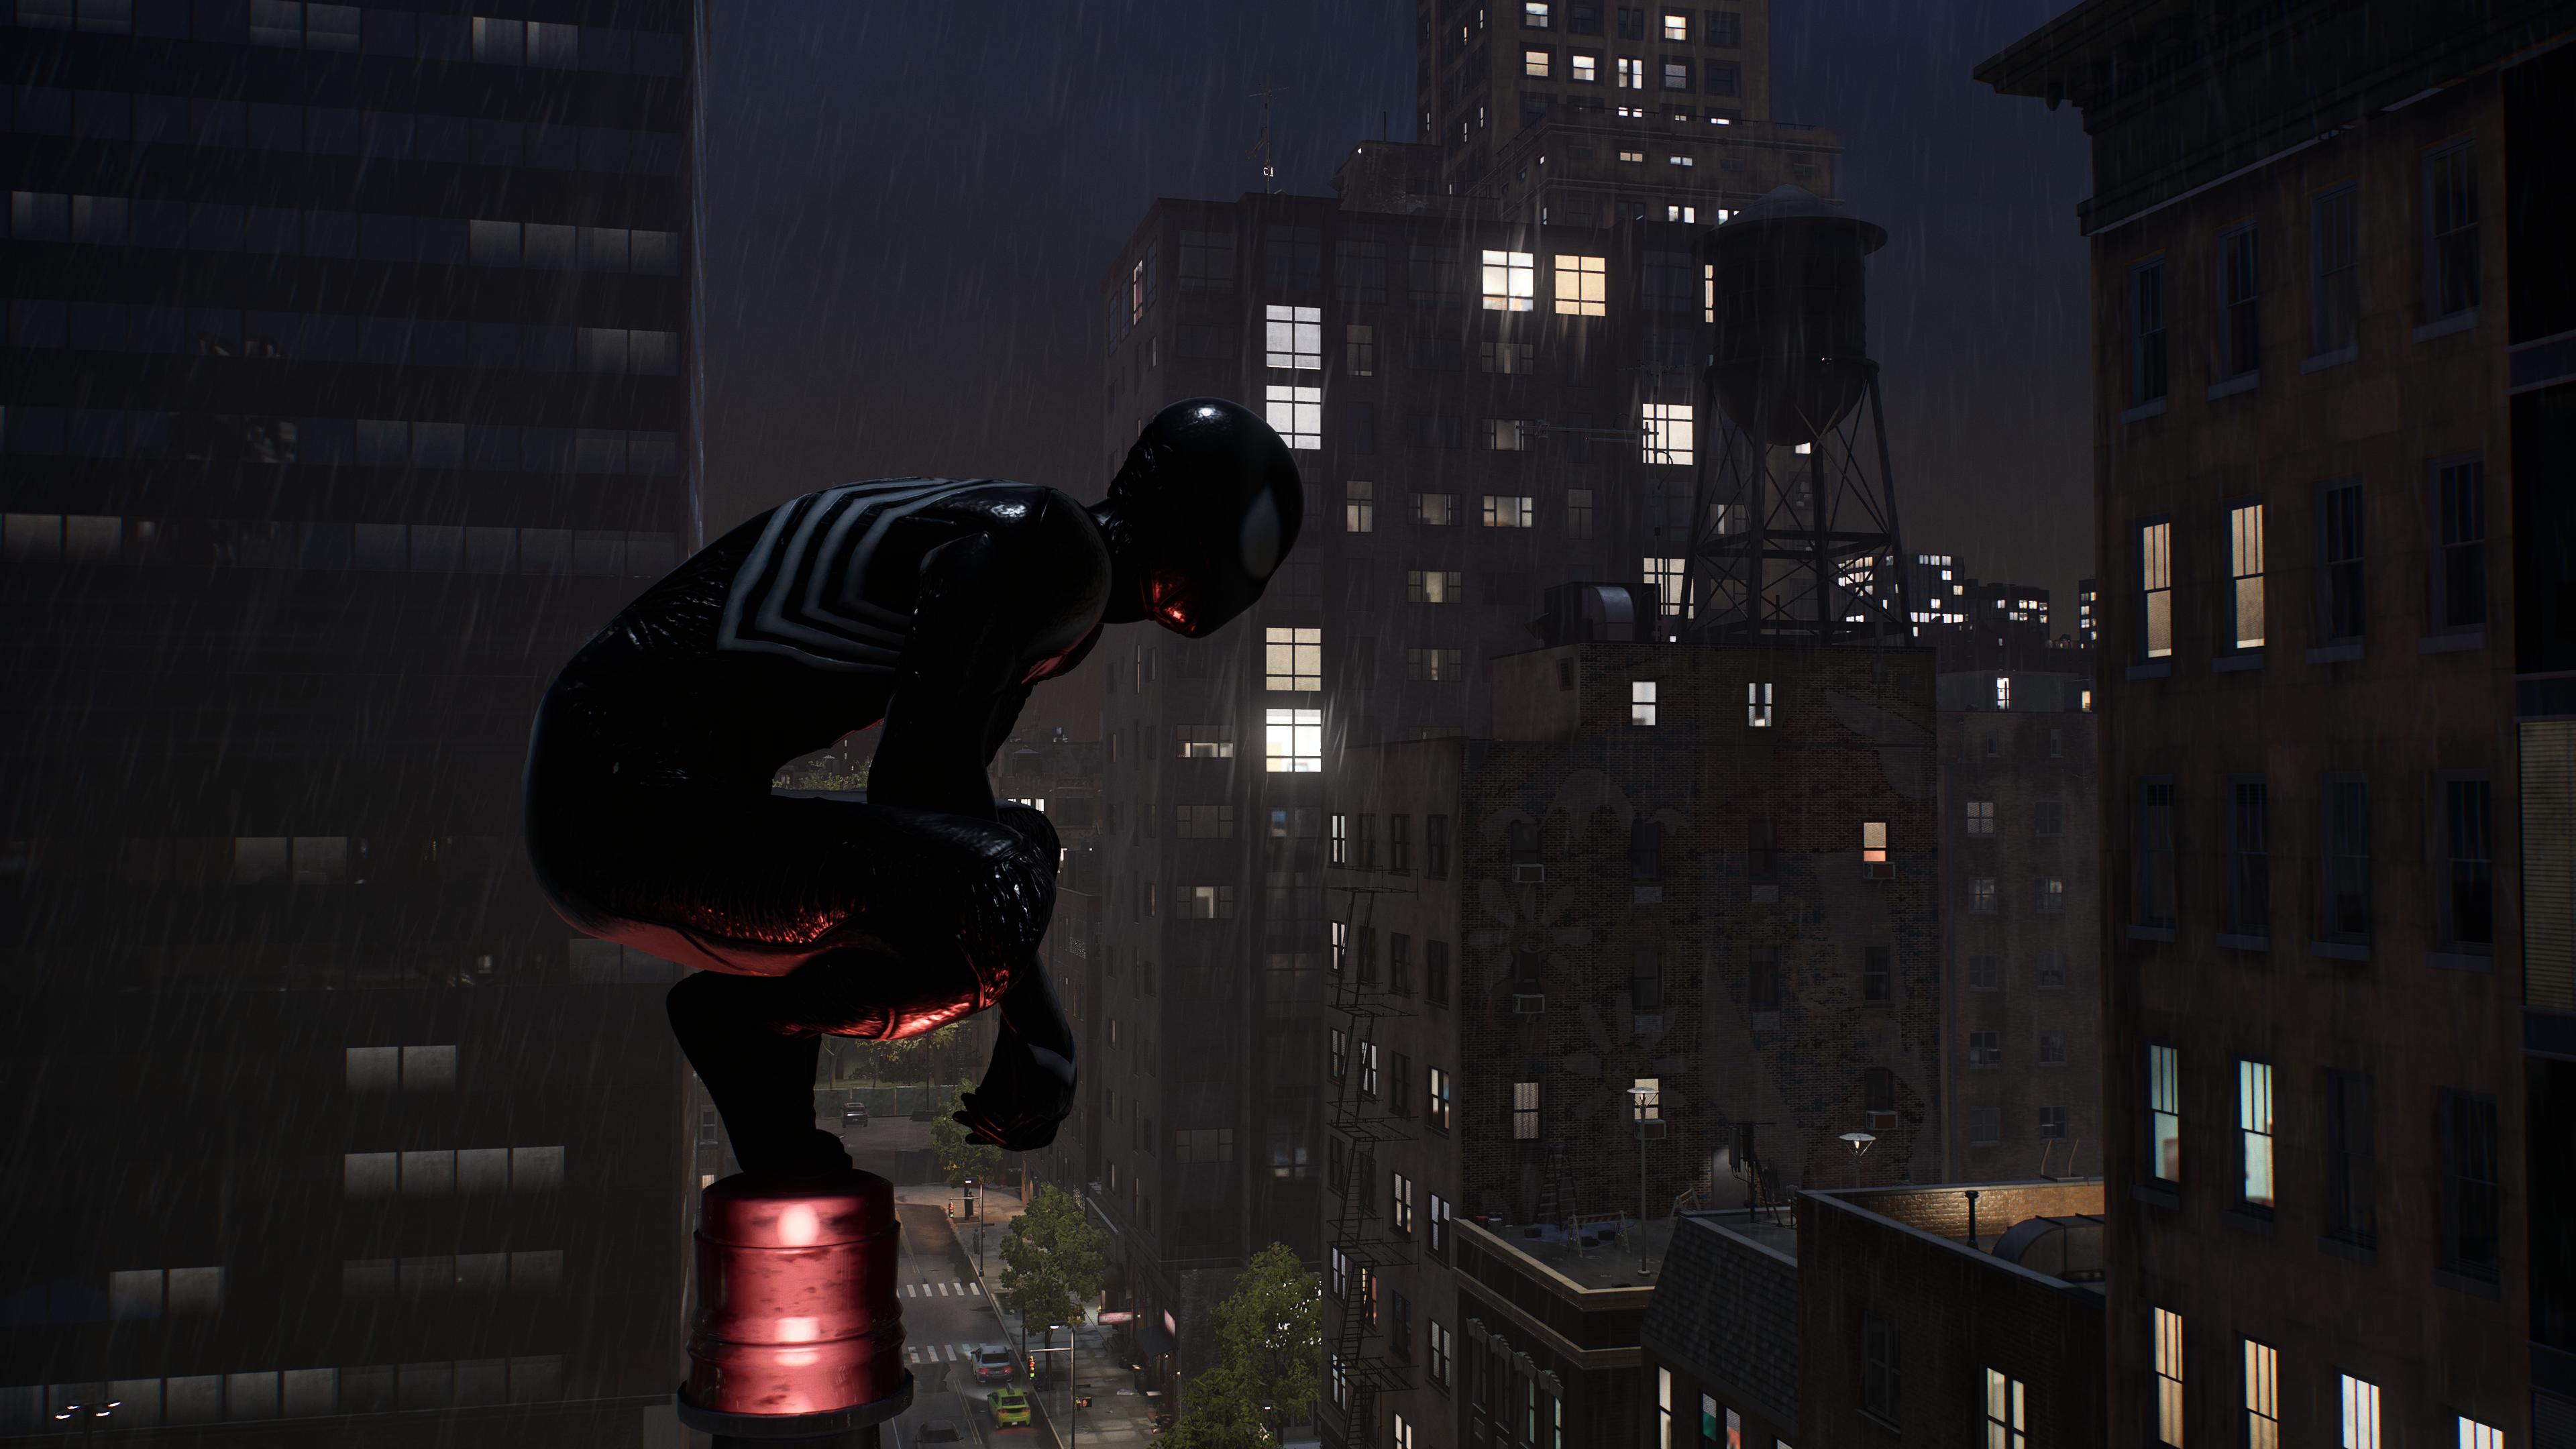 Review: Spider-Man 2 é aventura ágil, densa e inesquecível